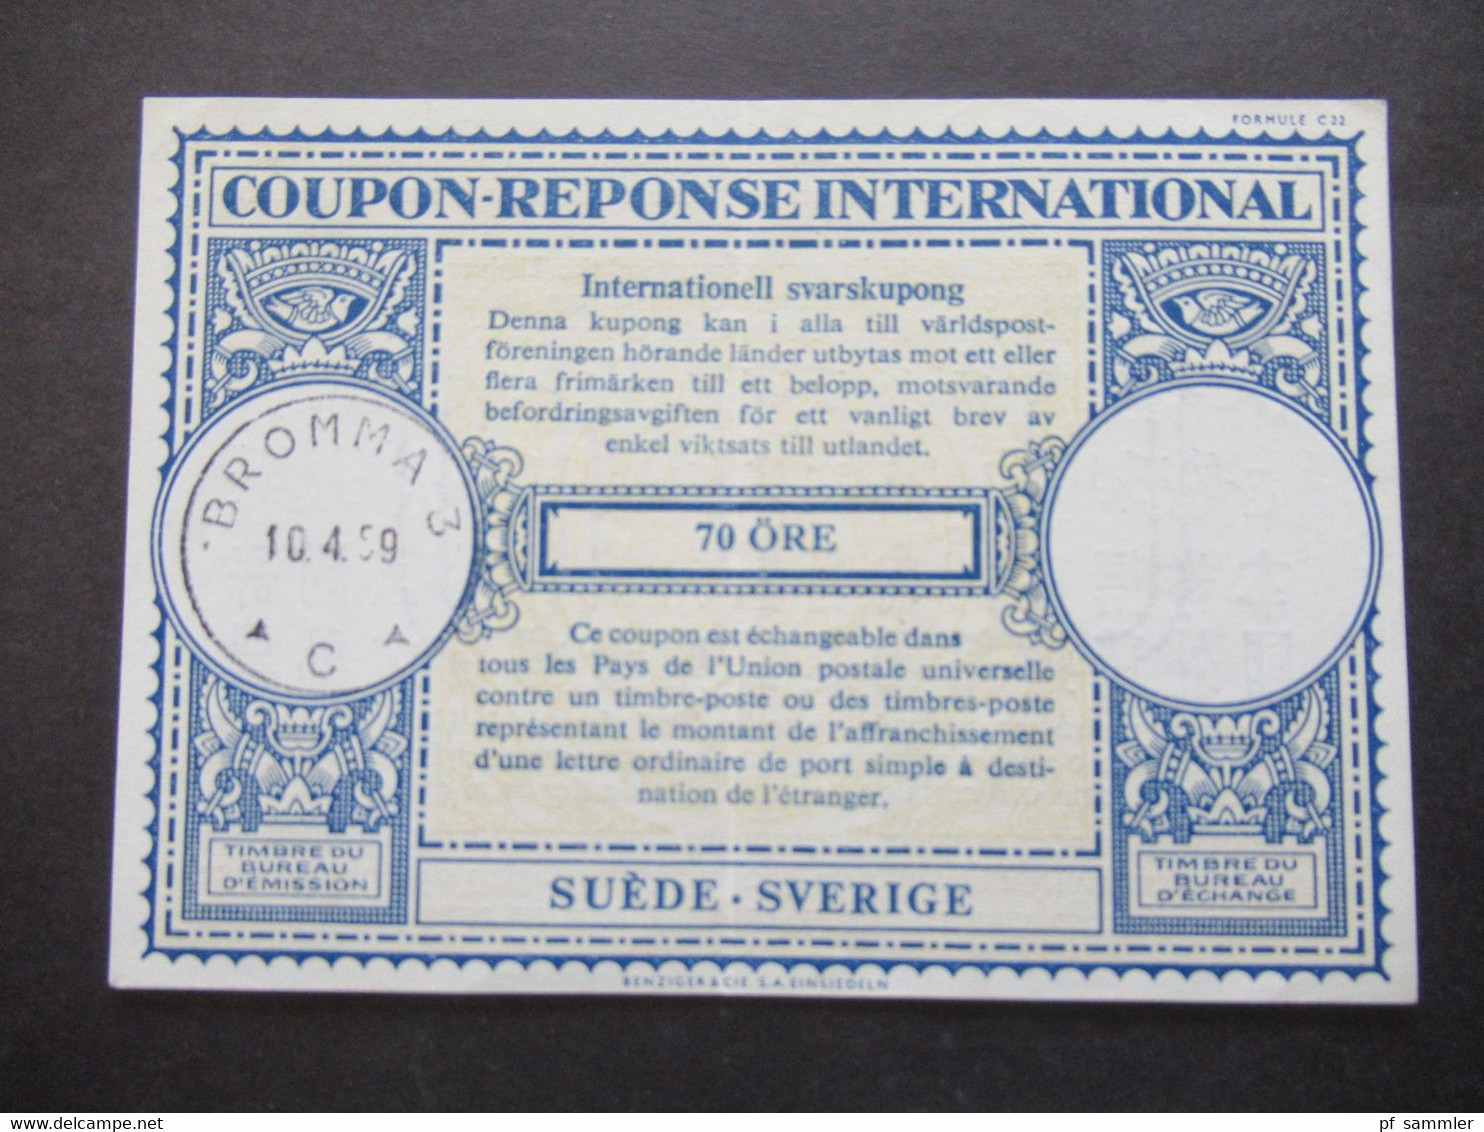 IAS Coupon Reponse International / Internationaler Antwortschein Schweden / Suede / Sverige Stempel 1959 Bromma - Briefe U. Dokumente